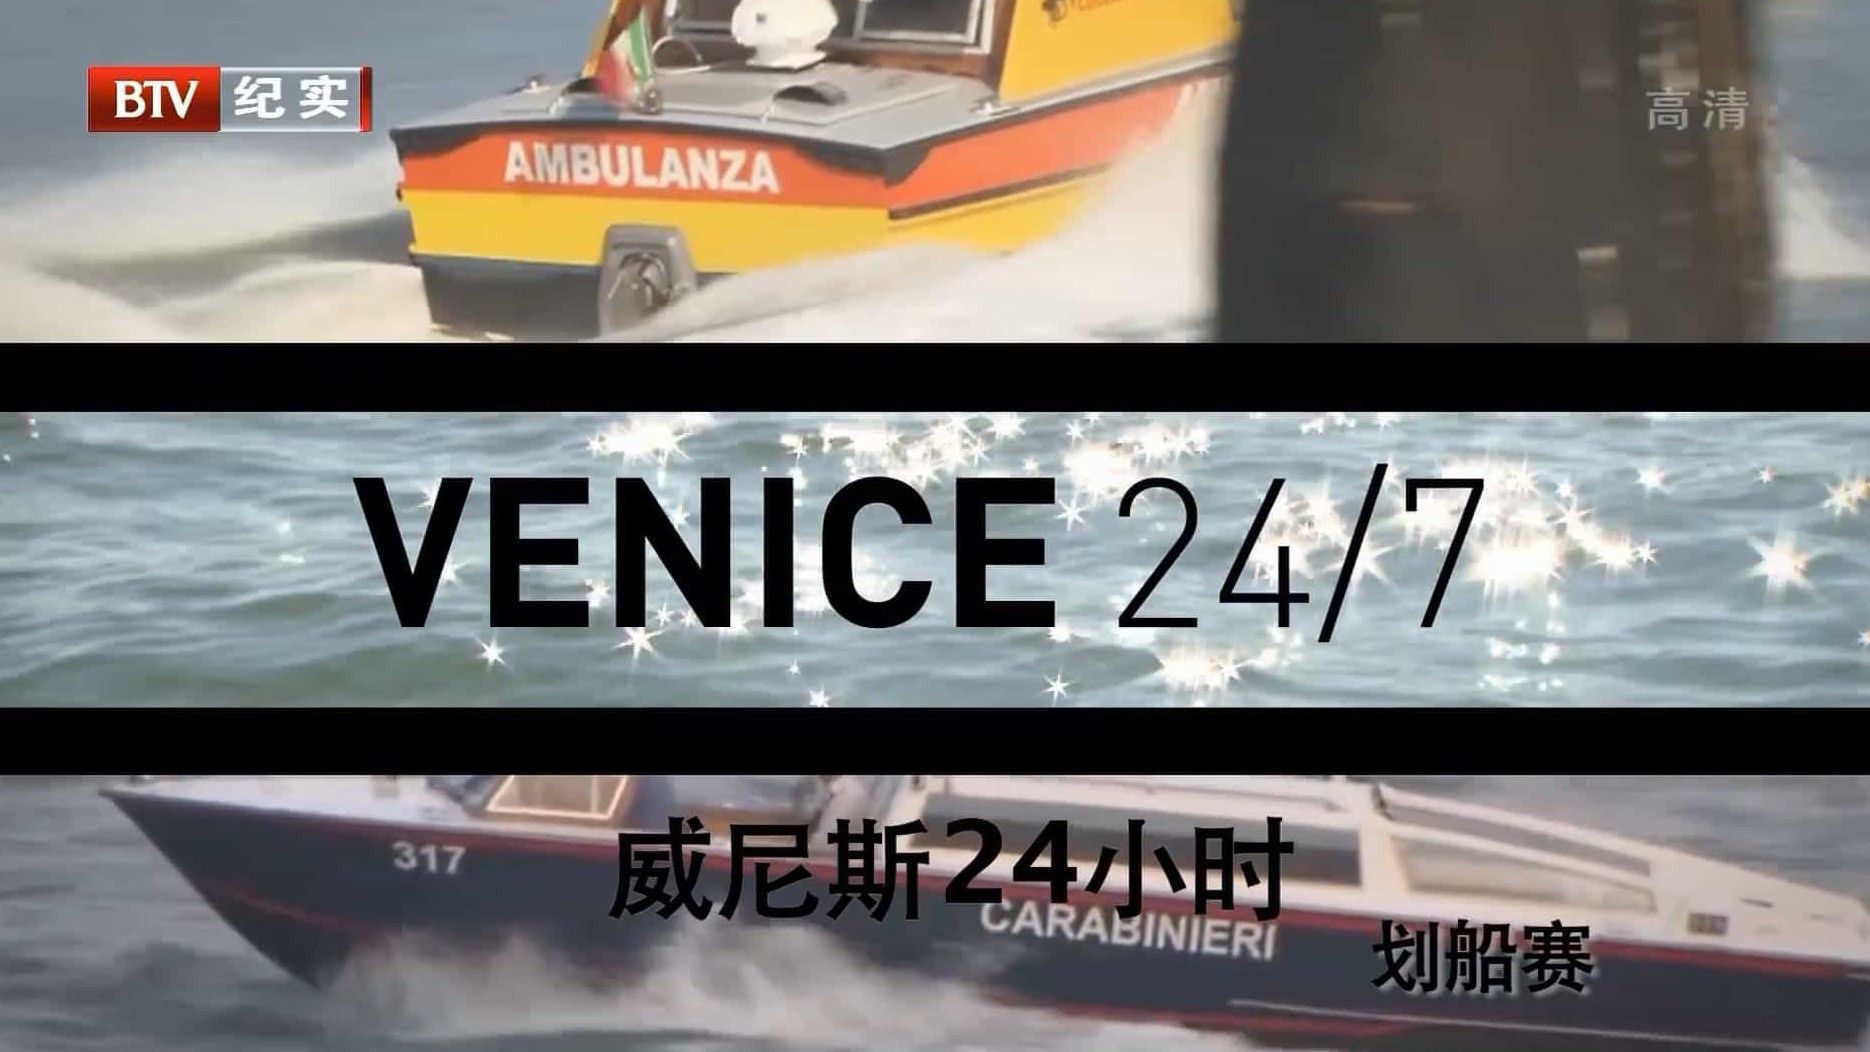 BBC纪录片/ BTV引进版 《威尼斯24小时 Venice 24/7 2015》全6集 国语中字 1080i高清网盘下载